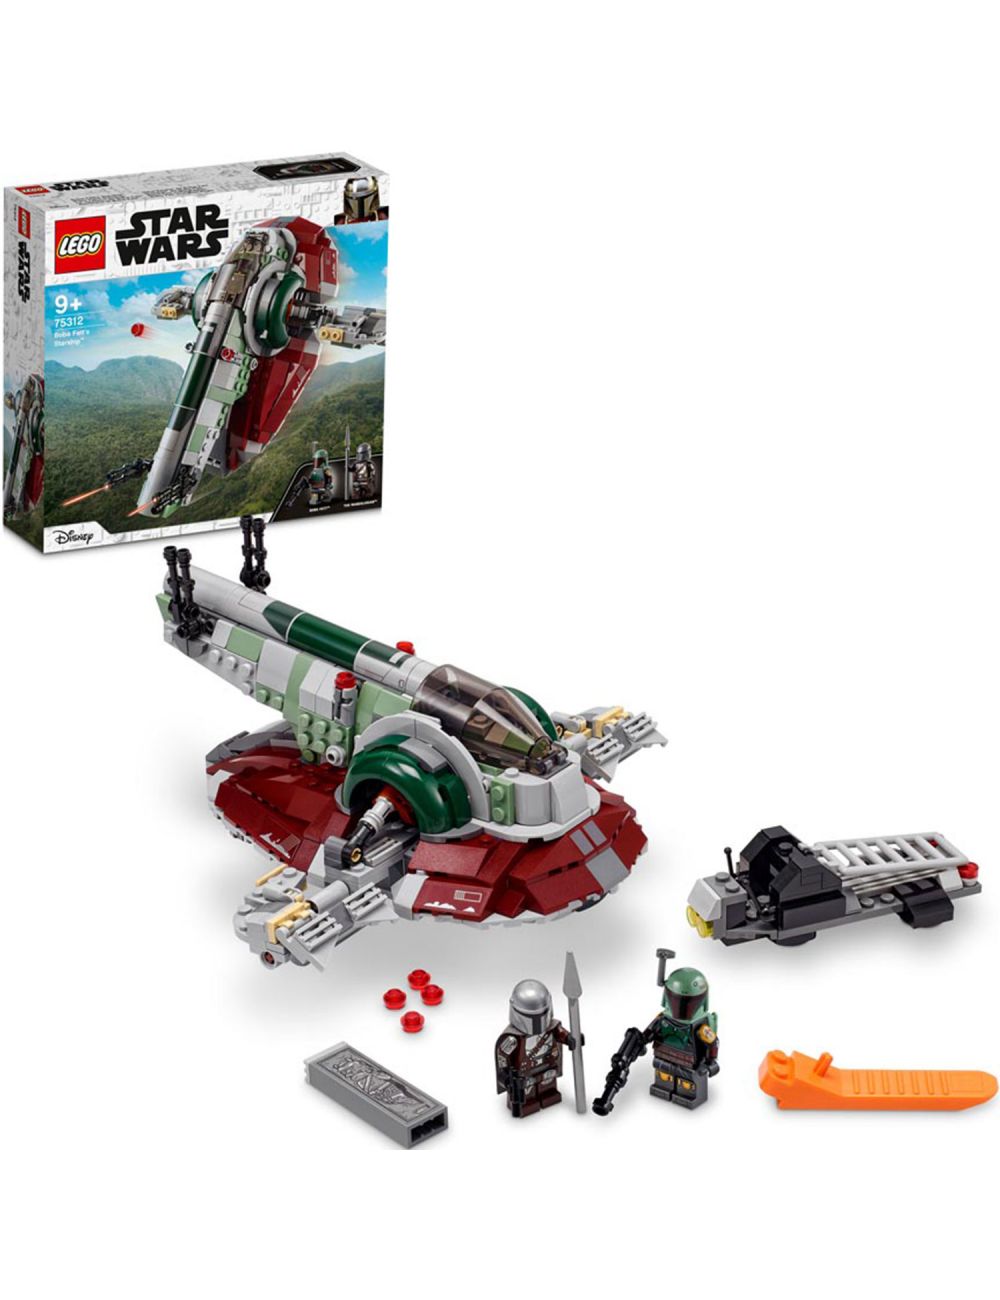 LEGO Star Wars Statek Kosmiczny Boby Fetta Klocki Zestaw 75312